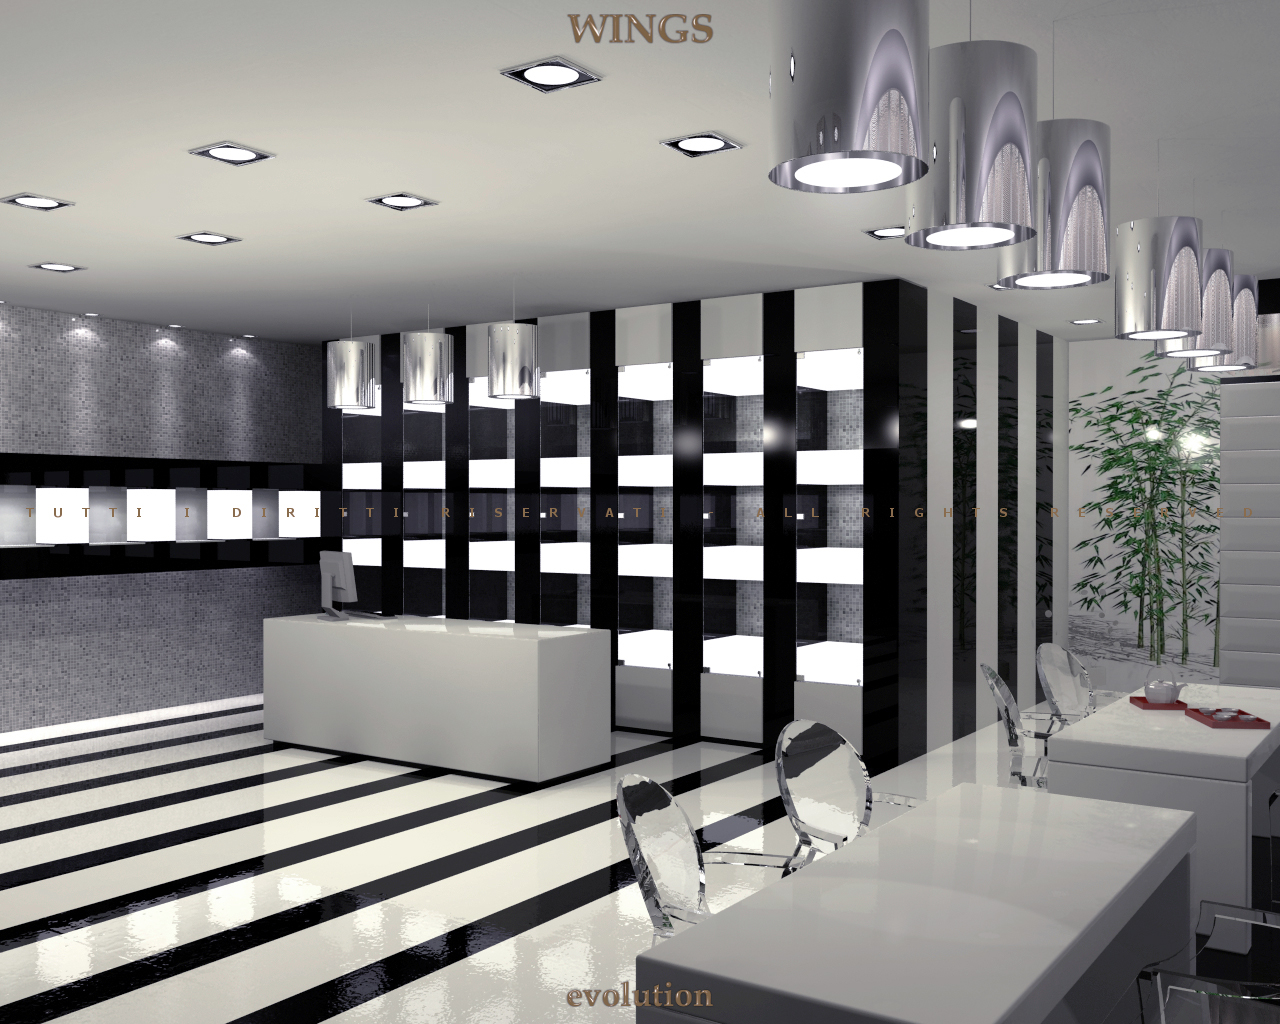 Wings arredamenti per negozi ottica gioielleria for P g arredamenti